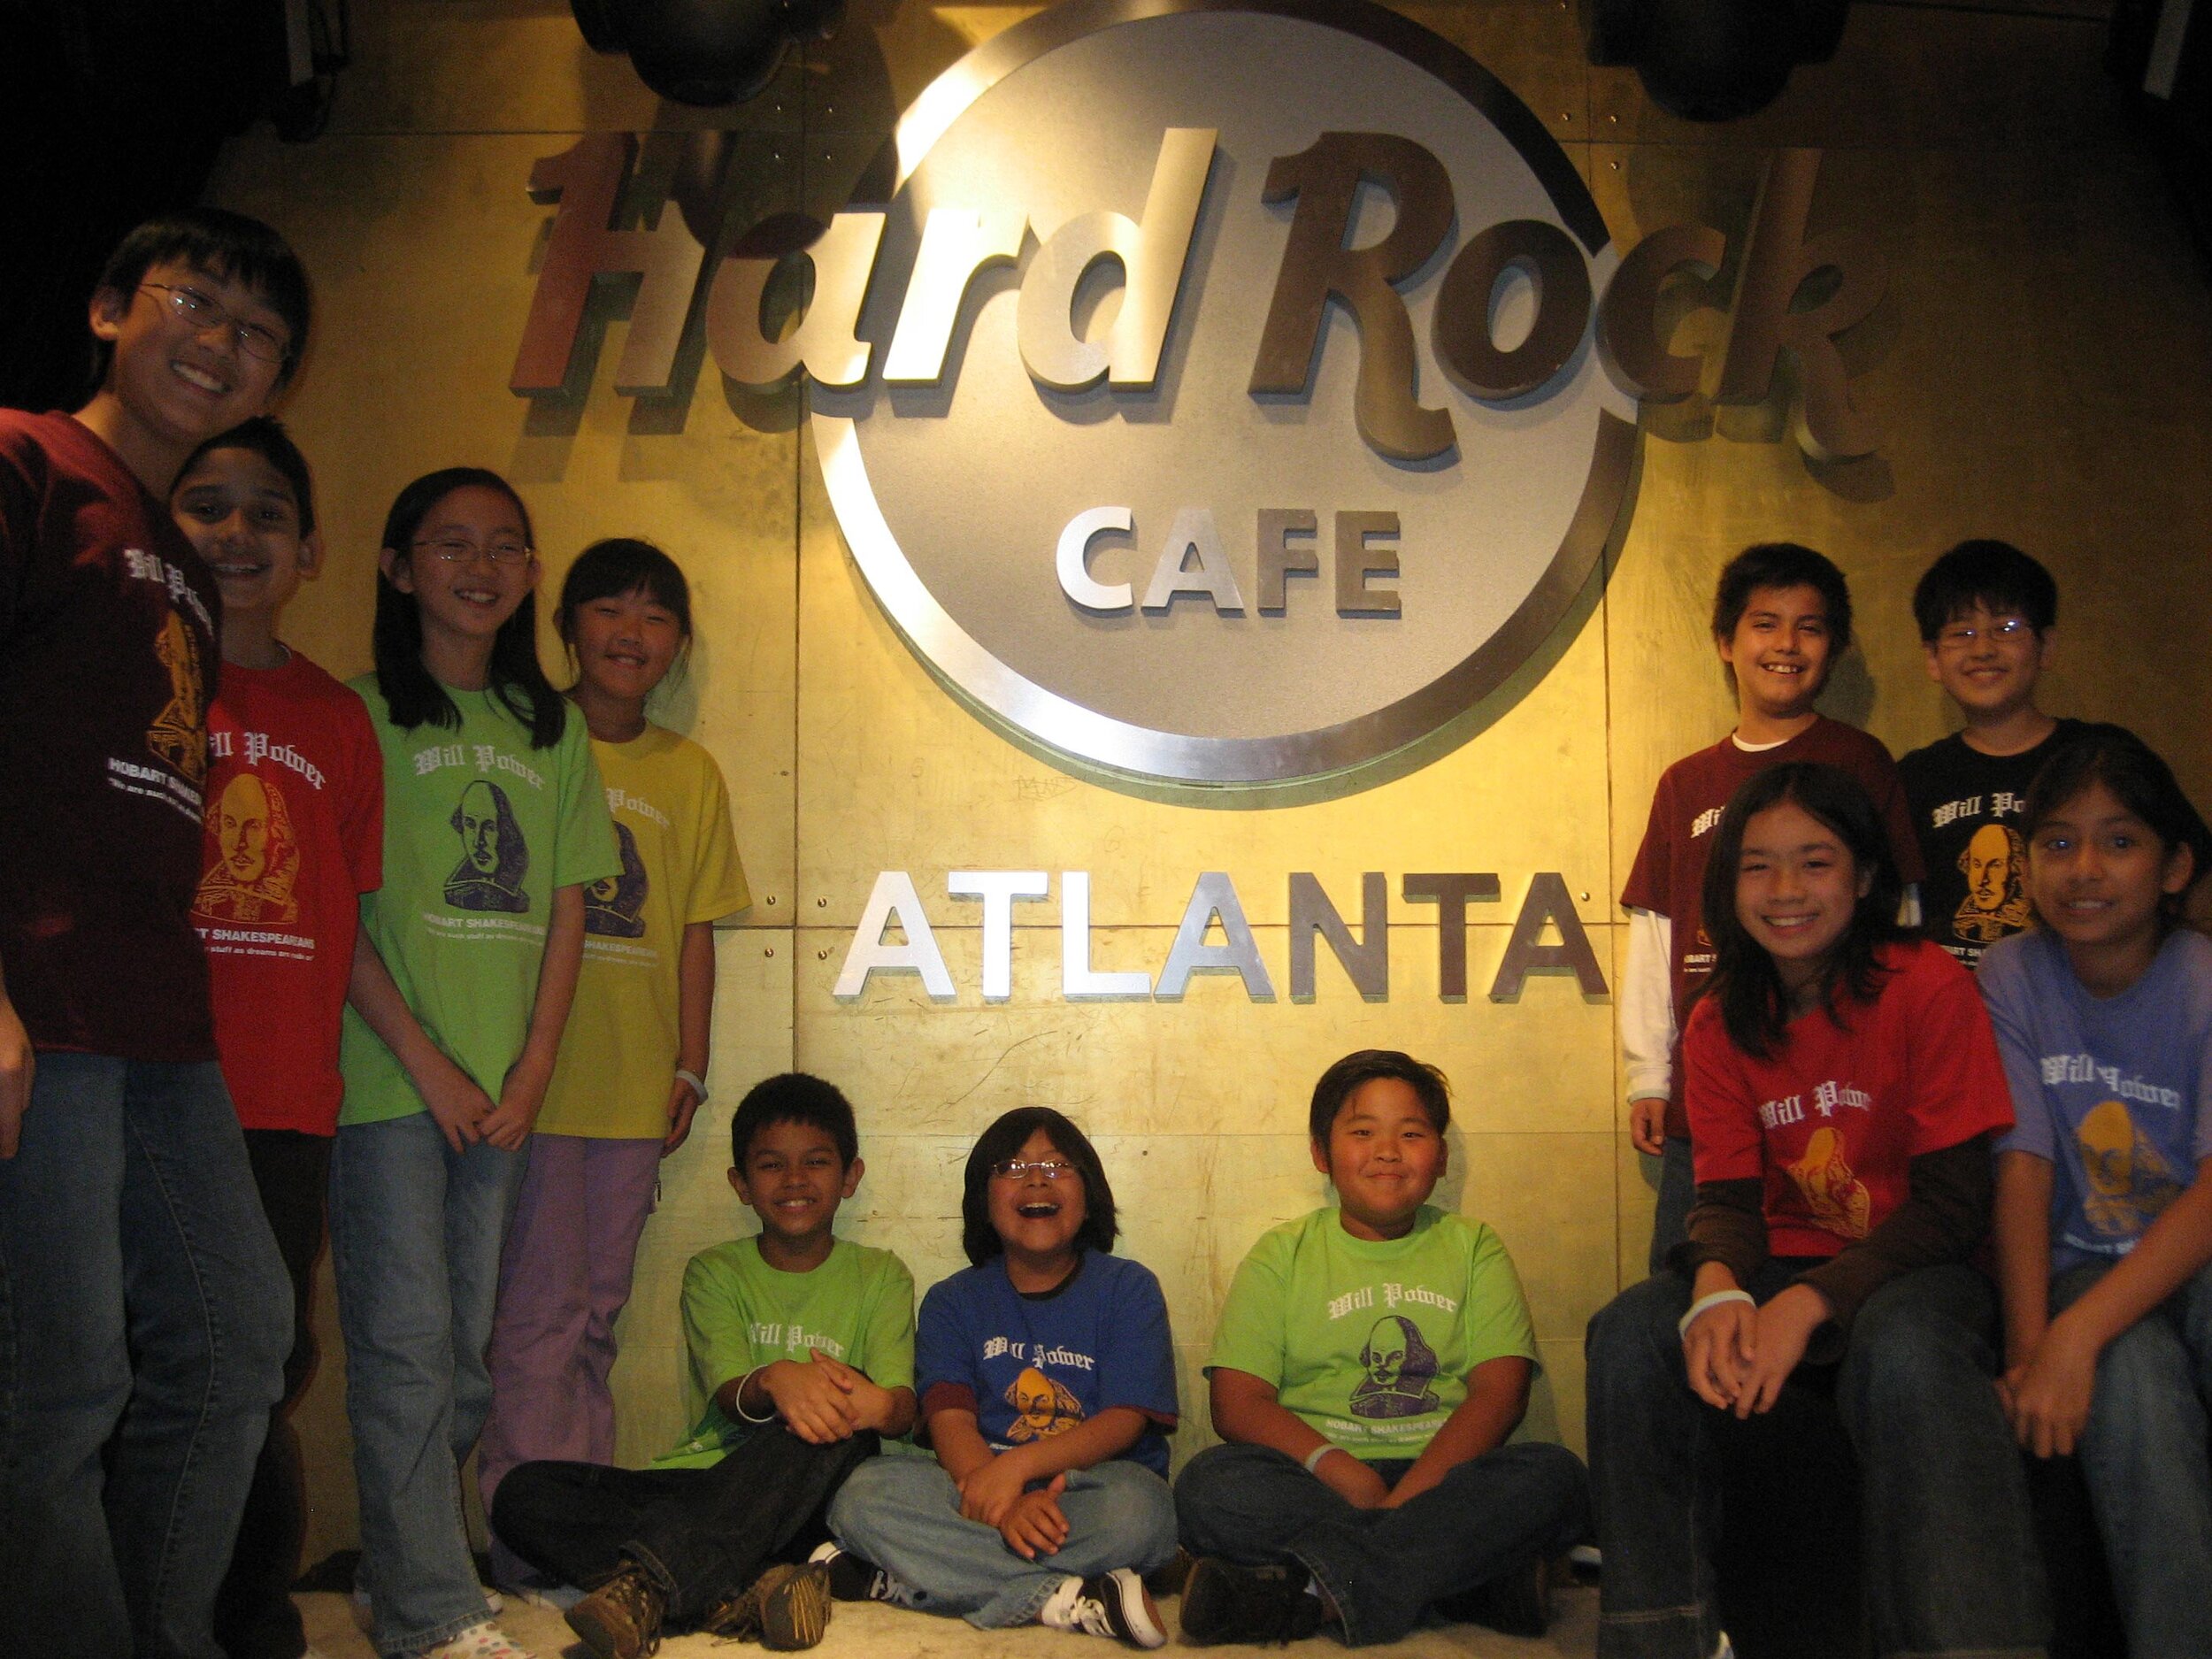  Party time at the Atlanta Hard Rock Cafe 